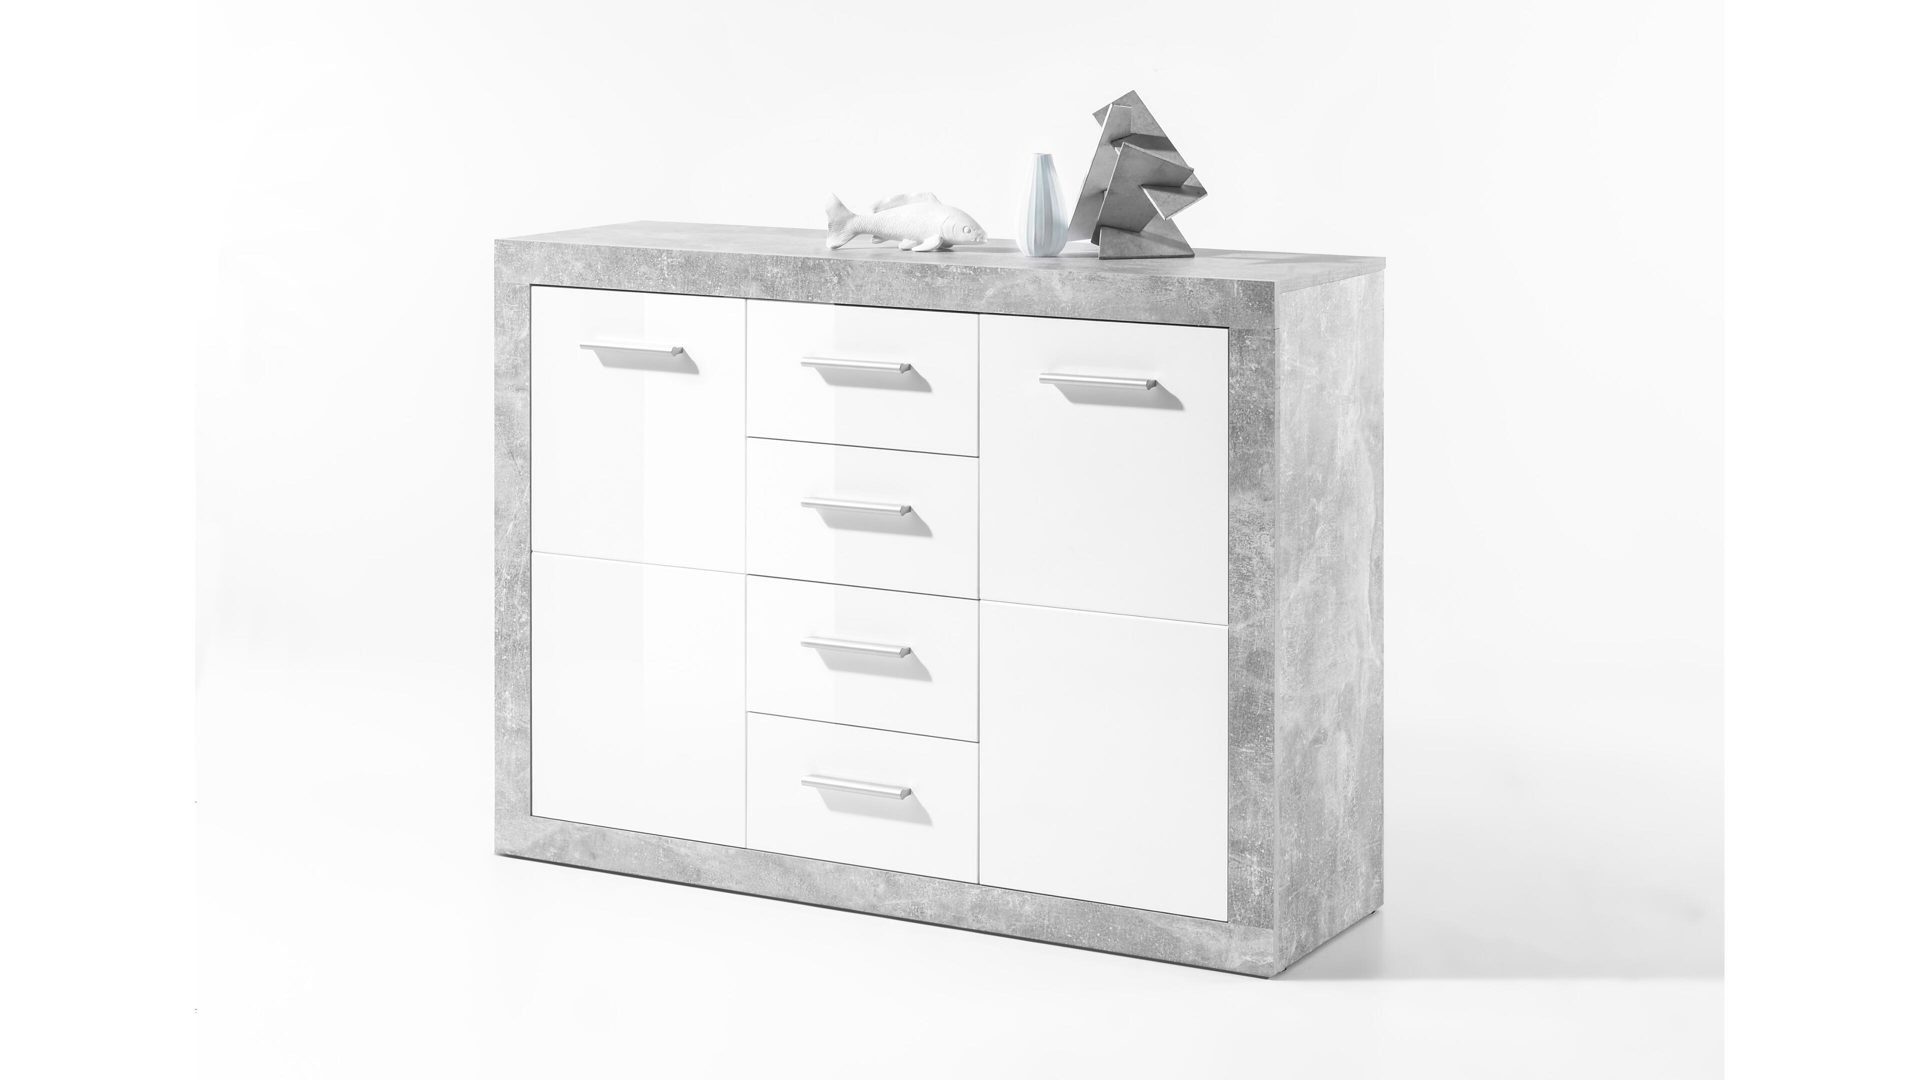 Kombikommode Bega consult aus Holz in Weiß Kombikommode betonfarbene & weiße Kunststoffoberflächen – zwei Türen, vier Schubladen